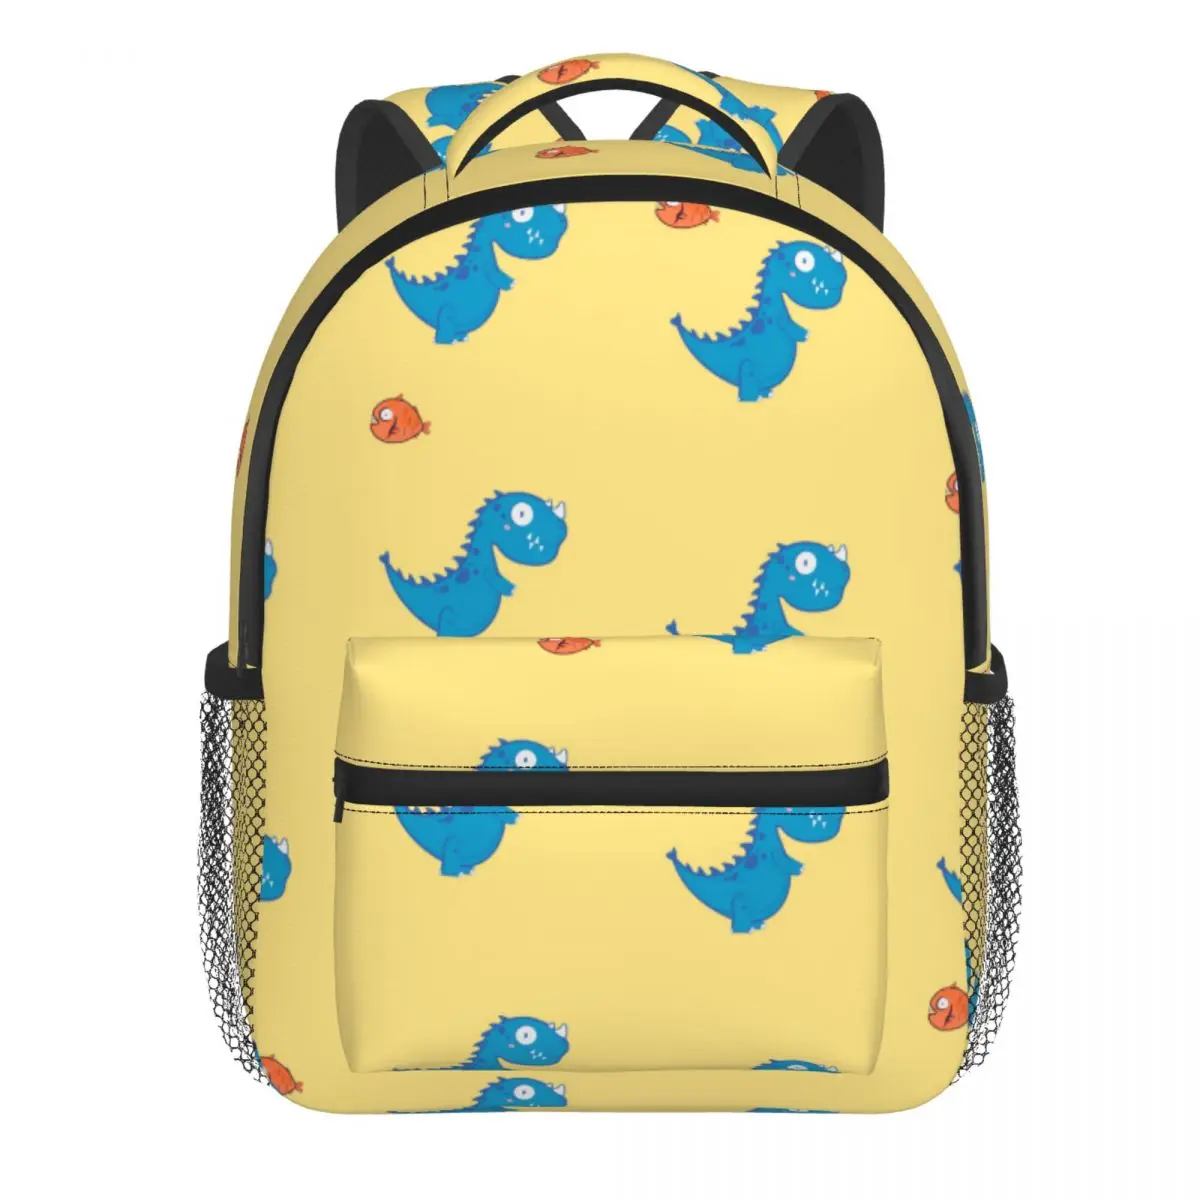 Dinosaurs Baby Backpack Kindergarten Schoolbag Kids Children School Bag